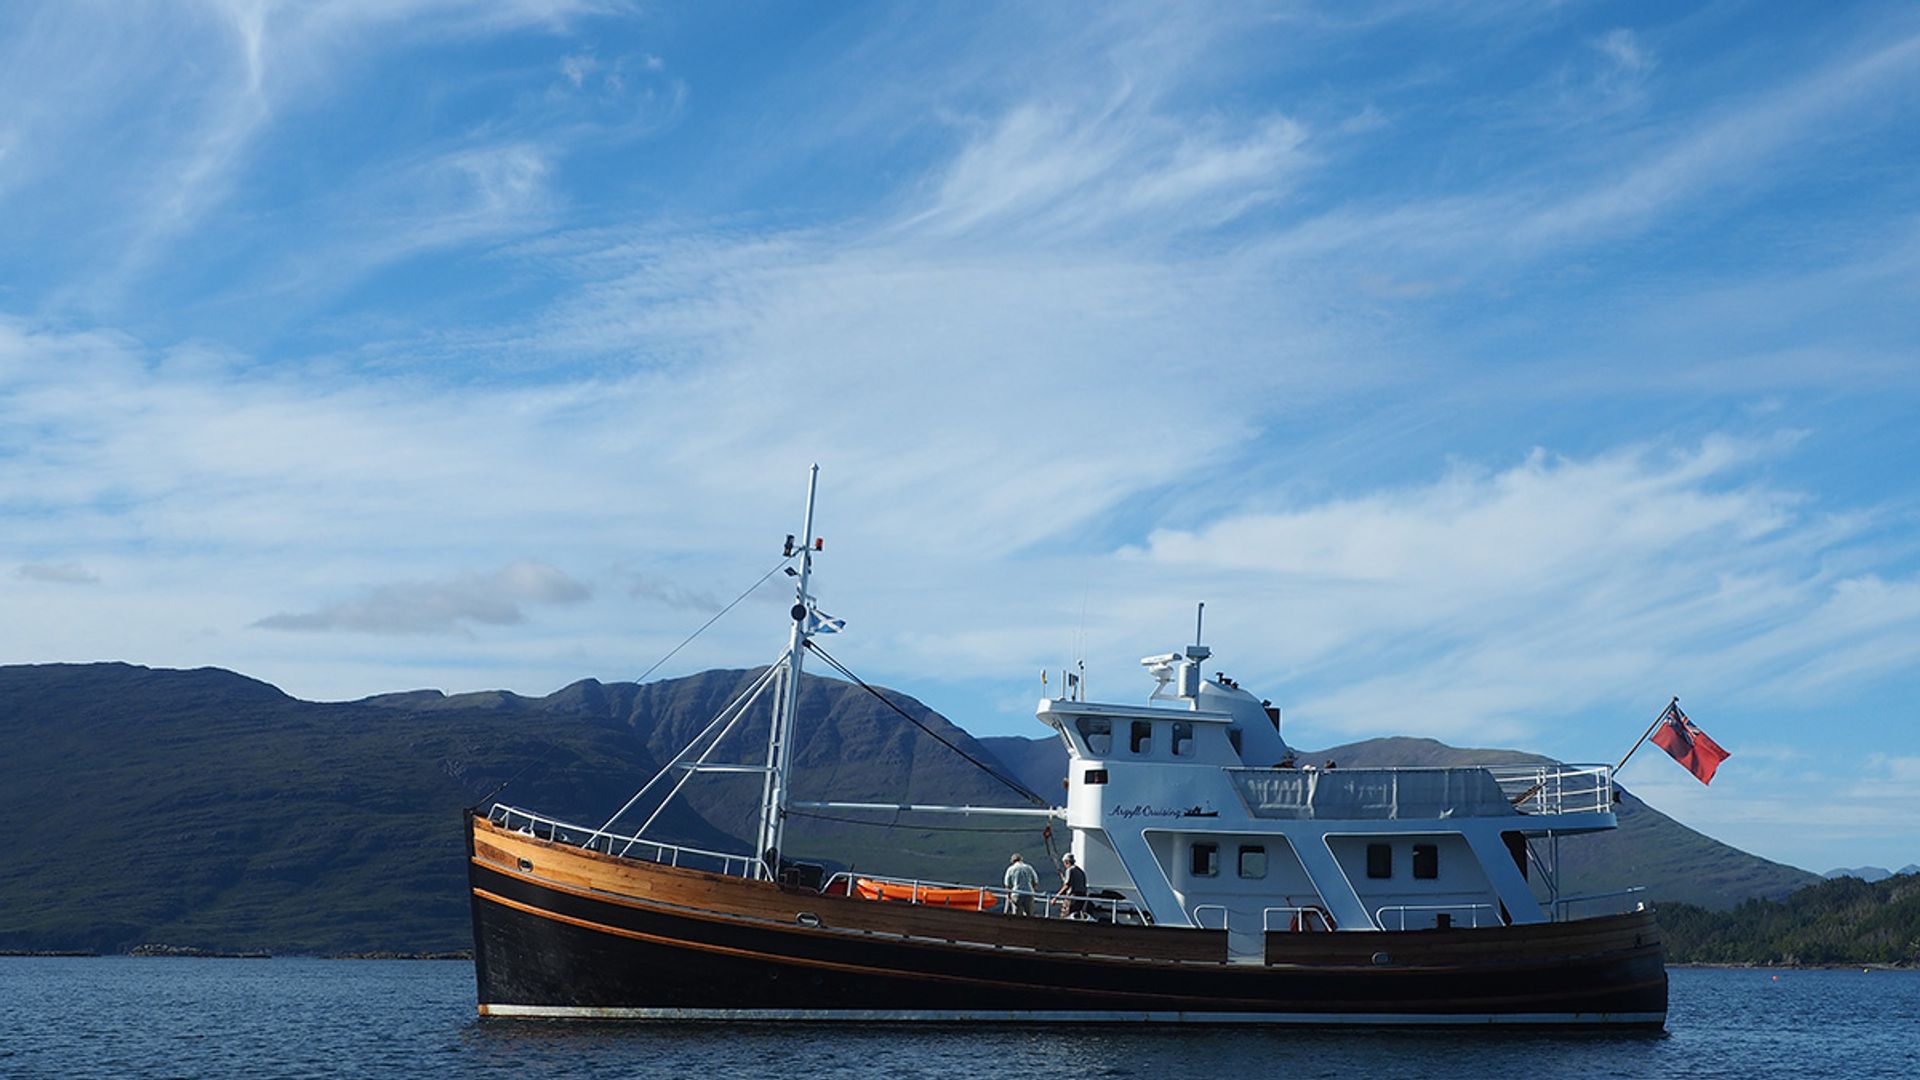 Argyll Cruising ship pictured on Scotland's West Coast